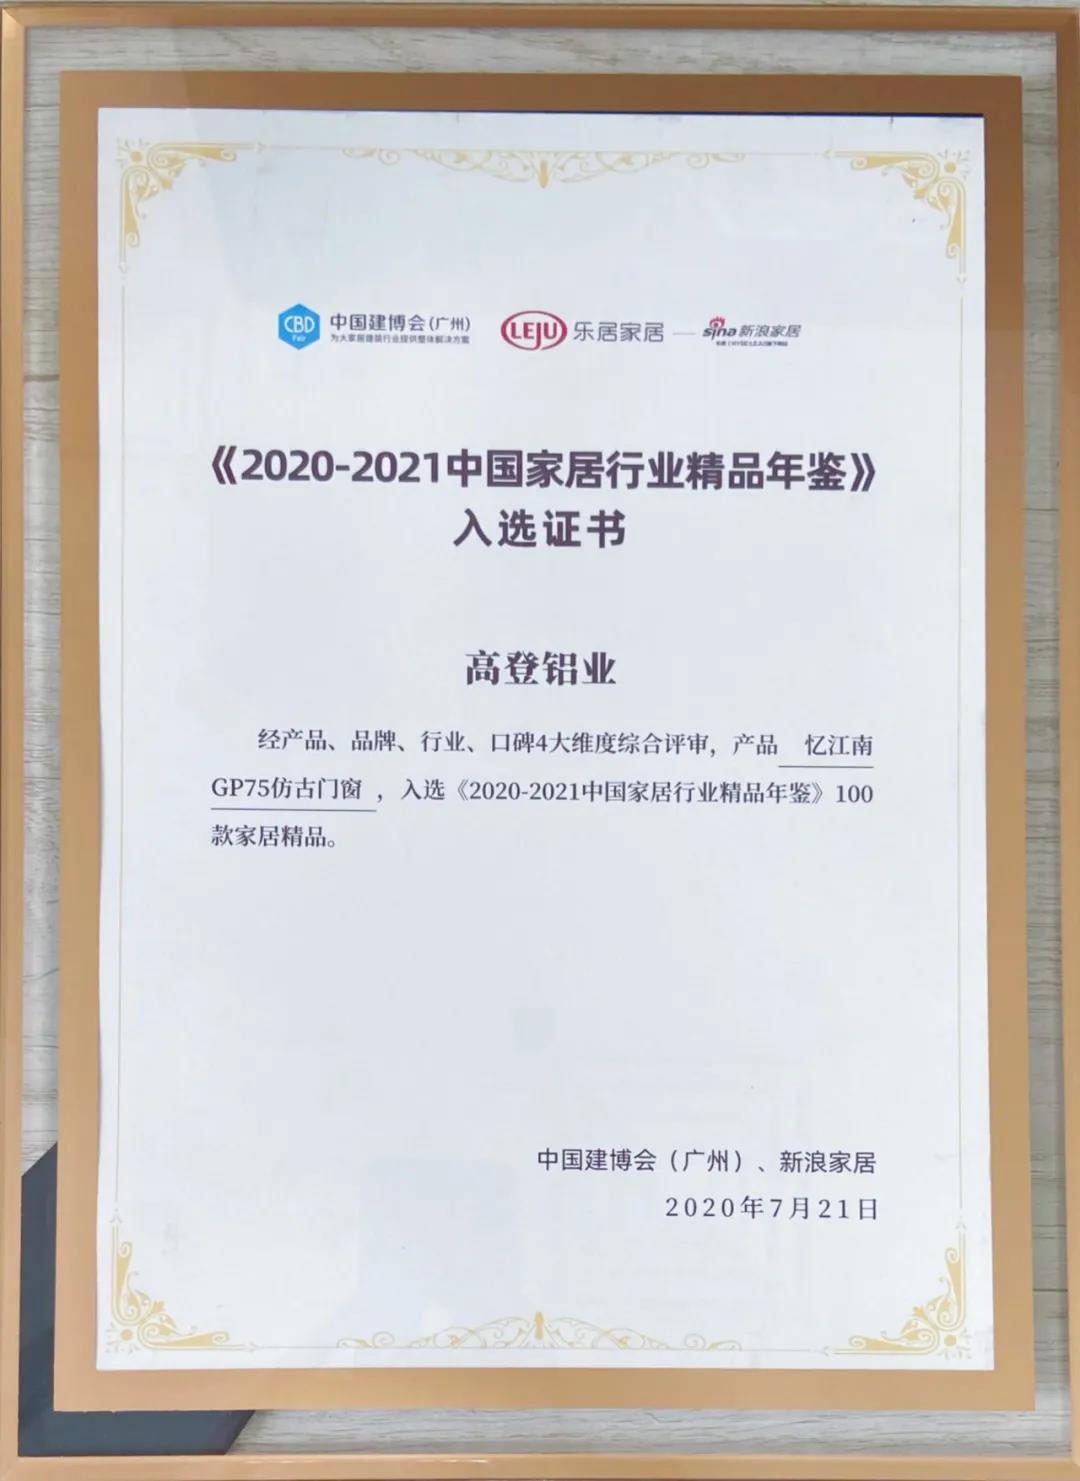 2021皇冠crown·(中国)官方网站 crown入选《2020-2021中国家居行业精品年鉴》